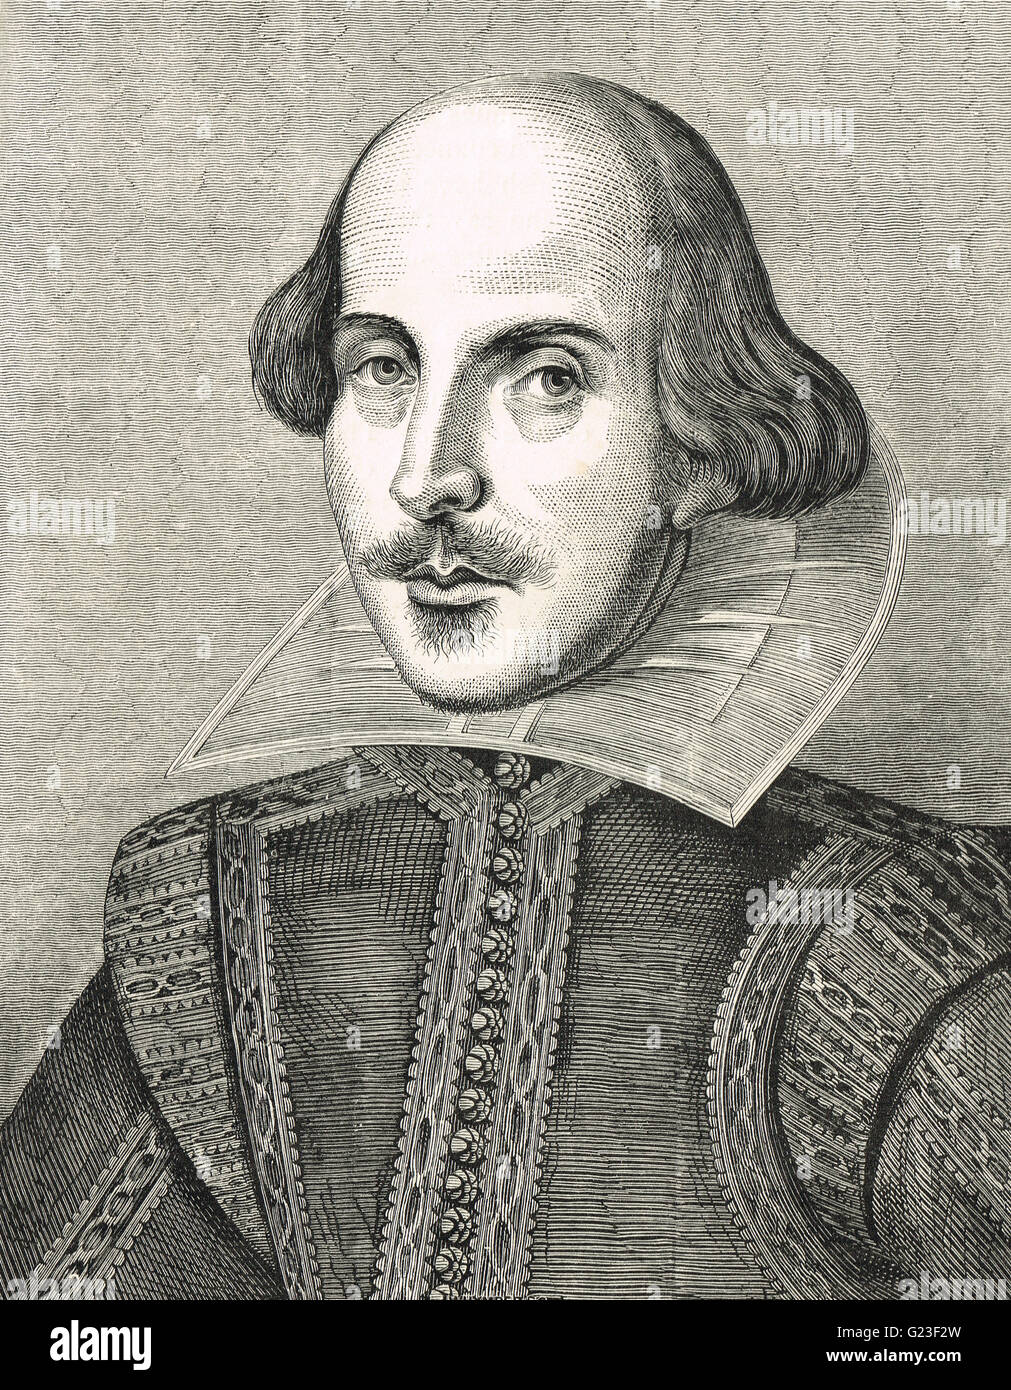 William Shakespeare, le Barde d'Avon, 1564-1616. Illustration gravée après le portrait par Martin Droeshout pour le premier folio publié en 1623. Banque D'Images